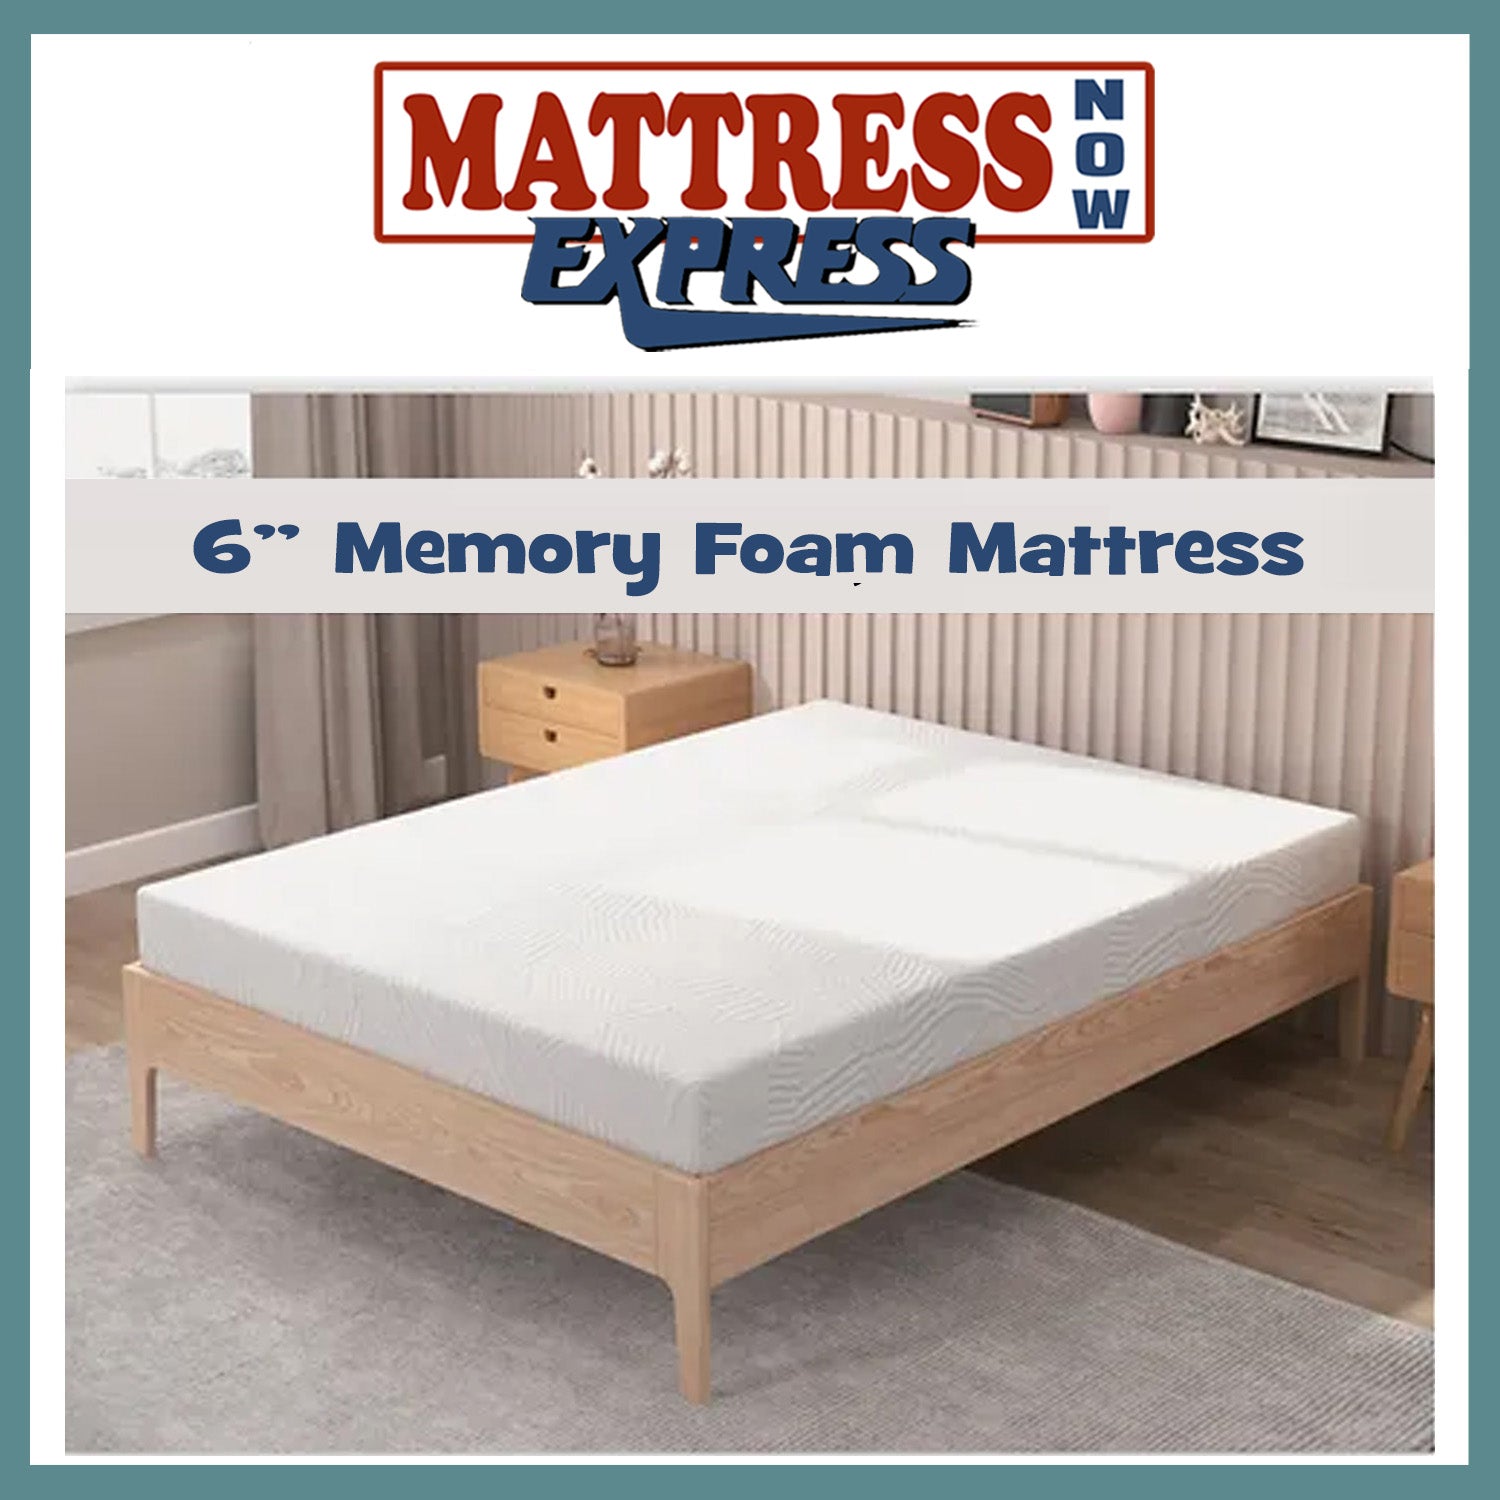 Mattress Now Express 6" Memory Foam Mattress